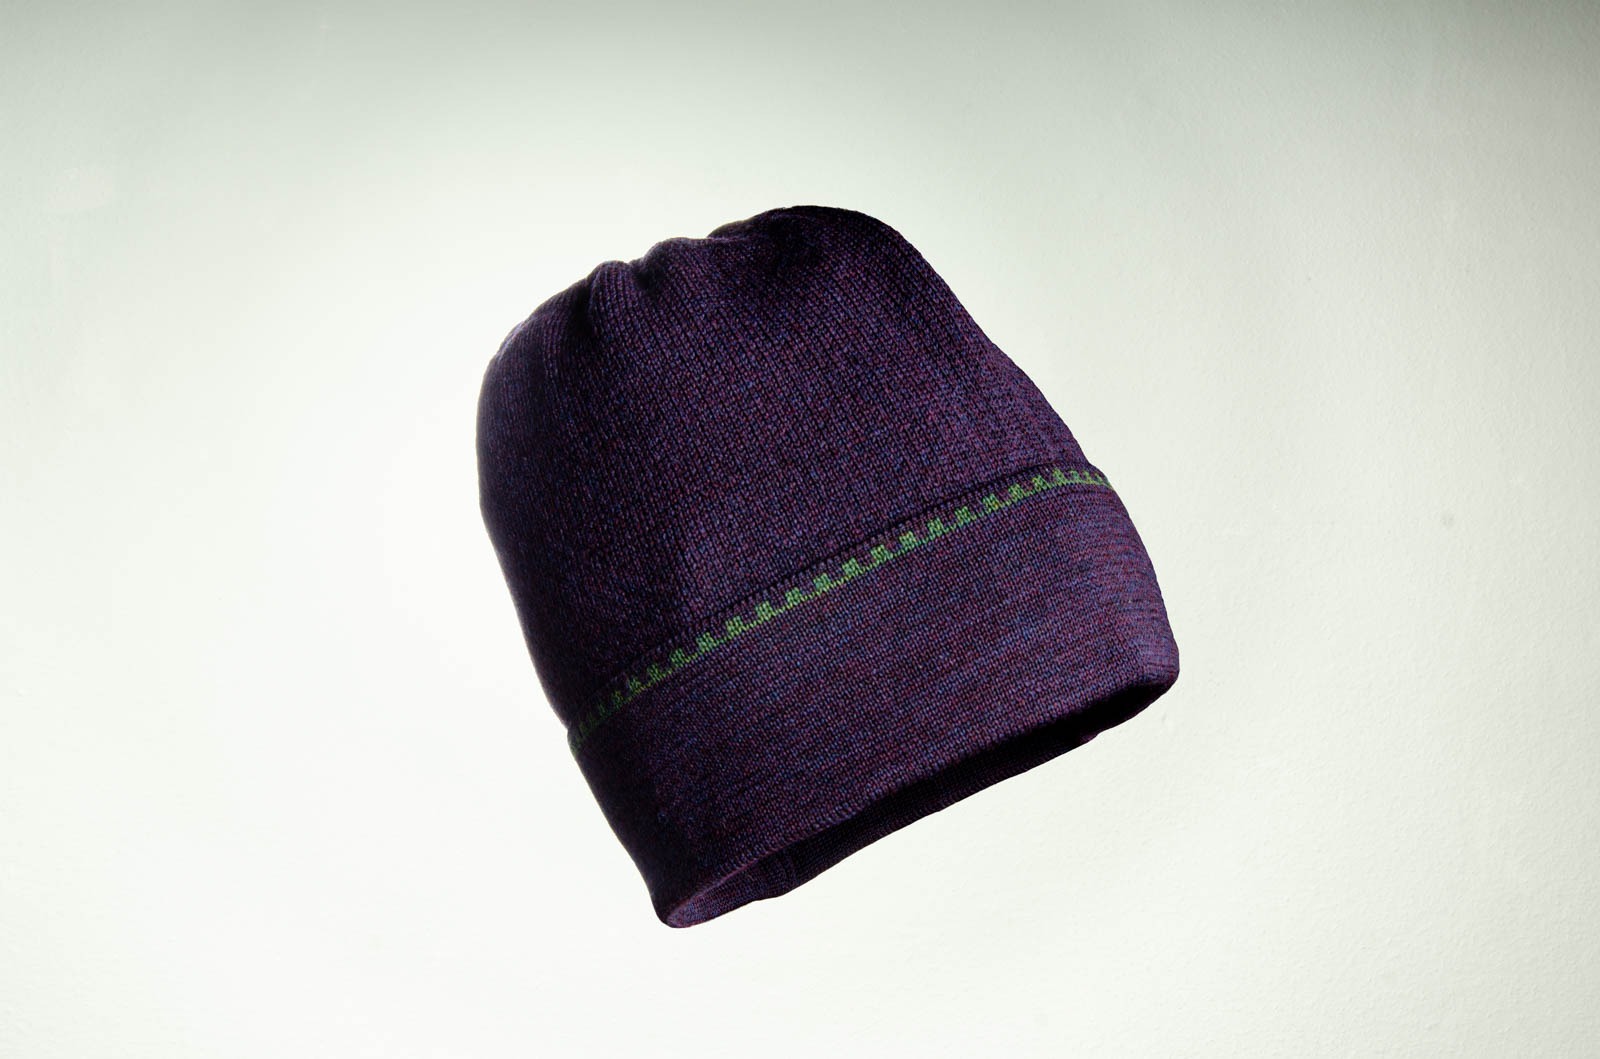 Merino Mütze in lila und dunkelgrün